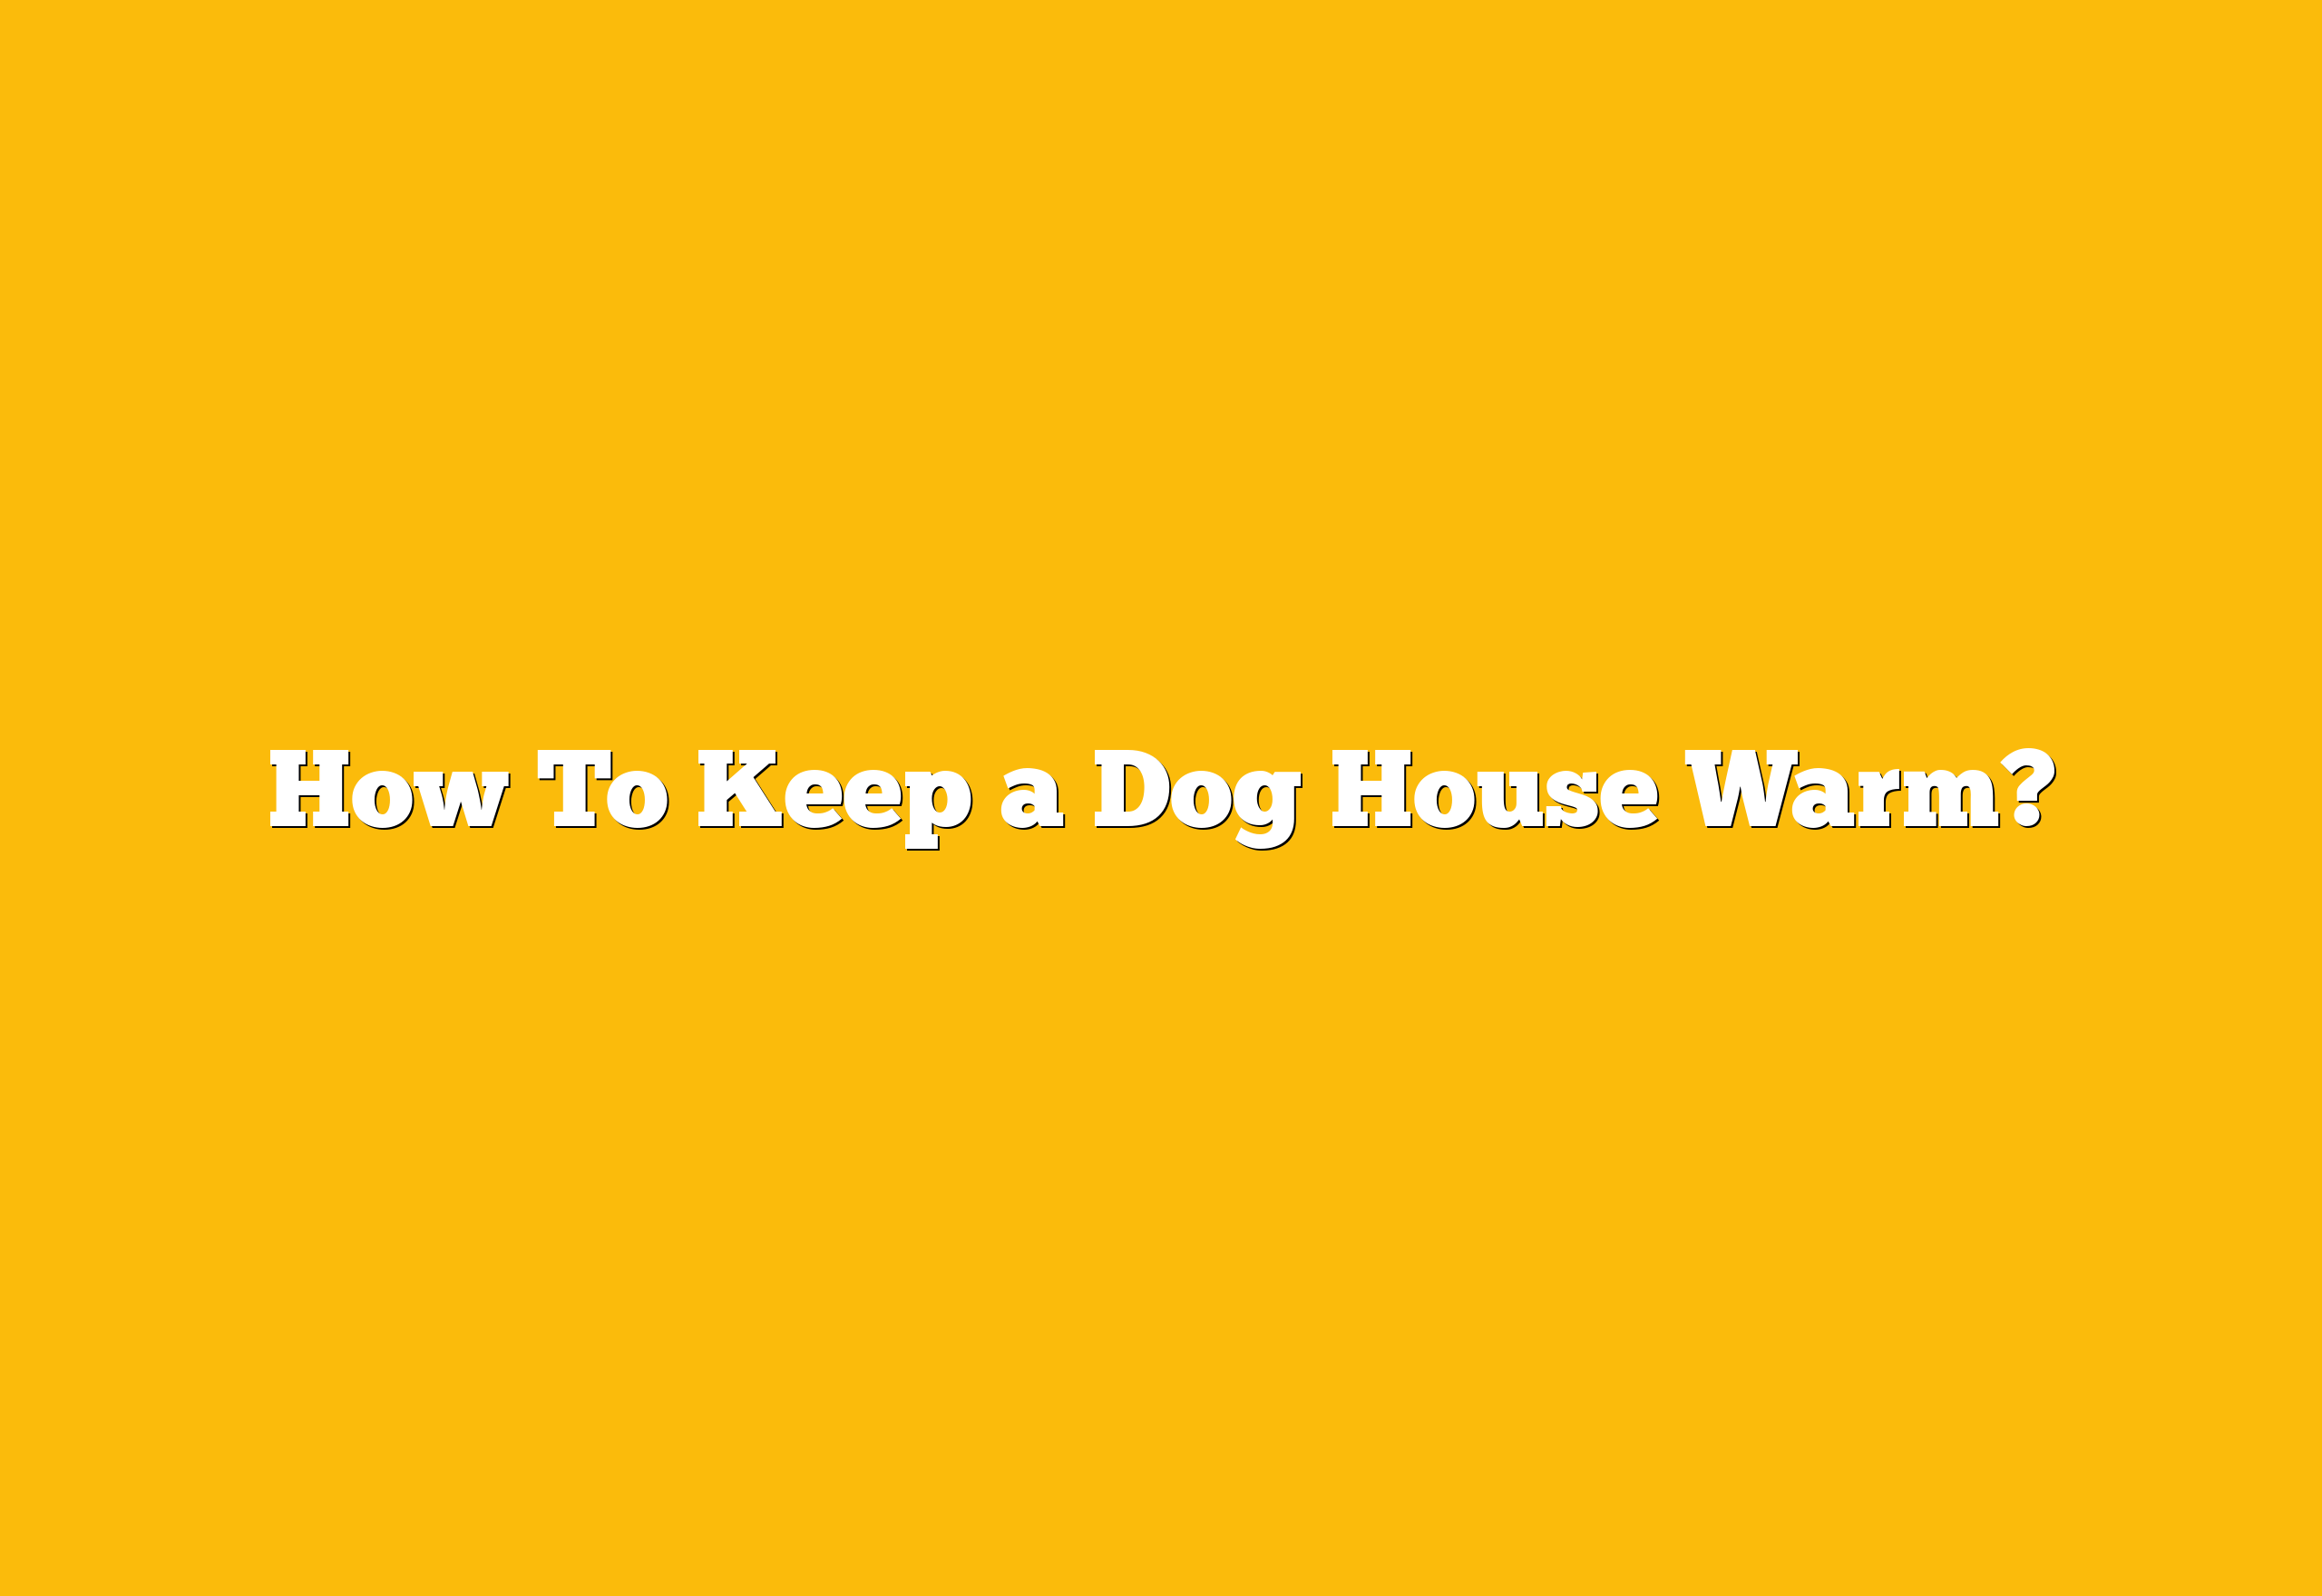 How To Keep a Dog House Warm?